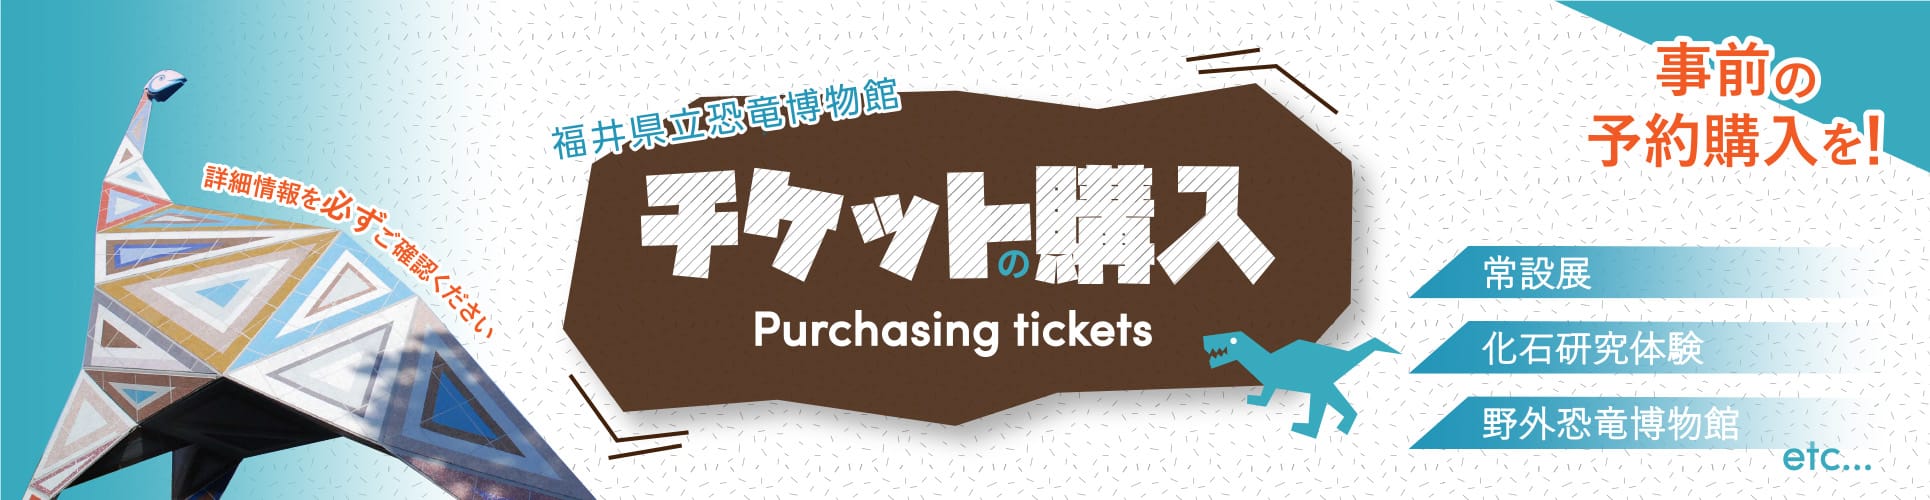 banner_ticket.jpg